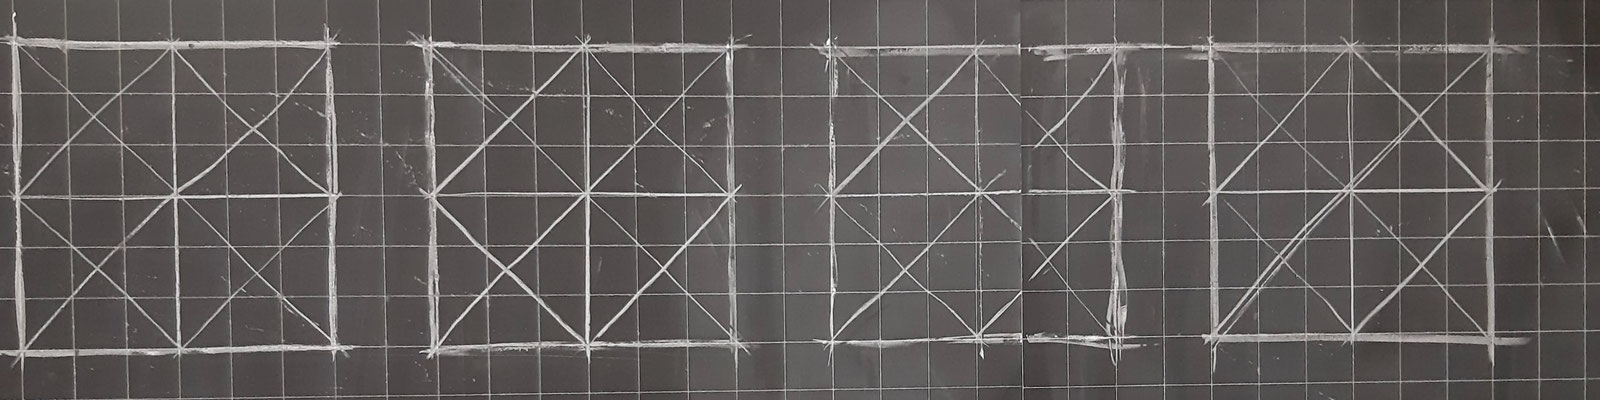 Fase4. Copio i quadrati e traccio le diagonali e le linee verticali e orizzontali e le diagonali nei quadrati più piccoli.